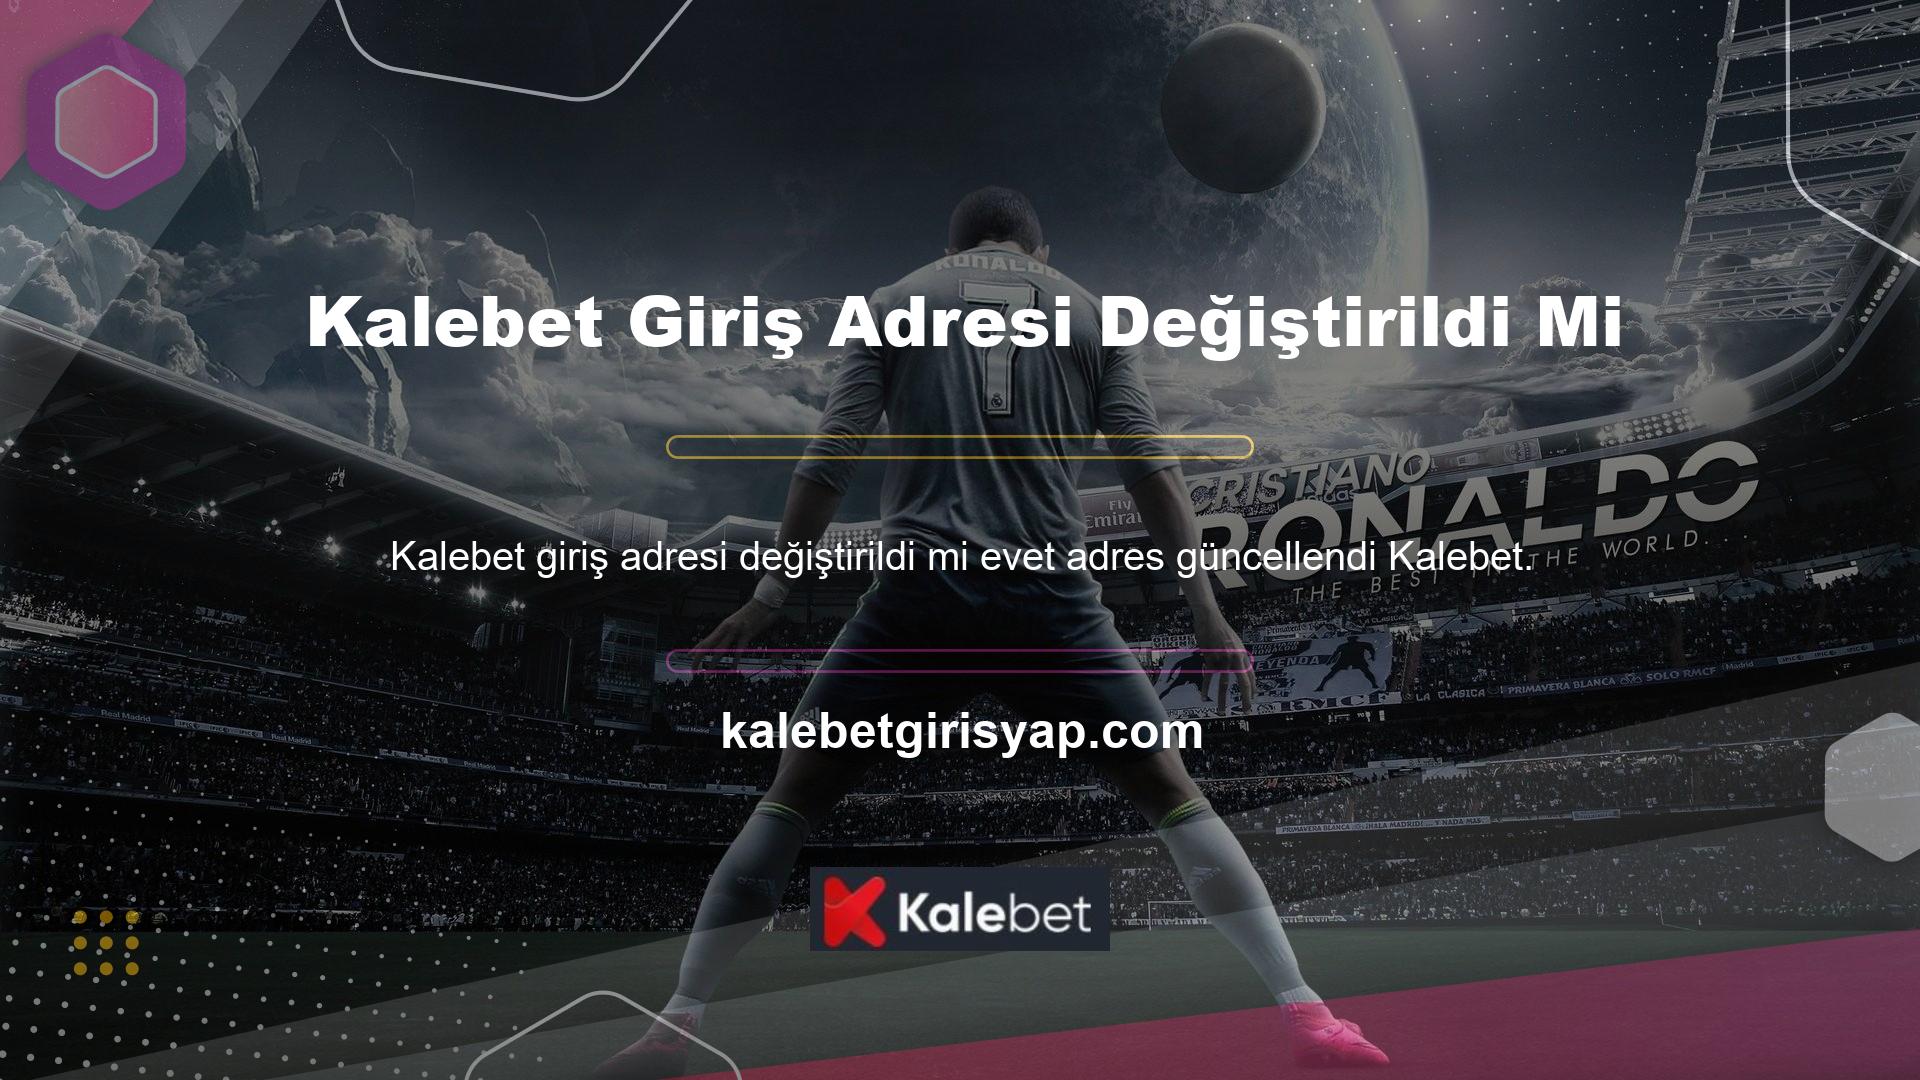 Hesabınıza erişmek ve oyunu Türkiye’deki Kalebet web sitesinde oynamak için yeni giriş adresinizi kullanmanız gerekir